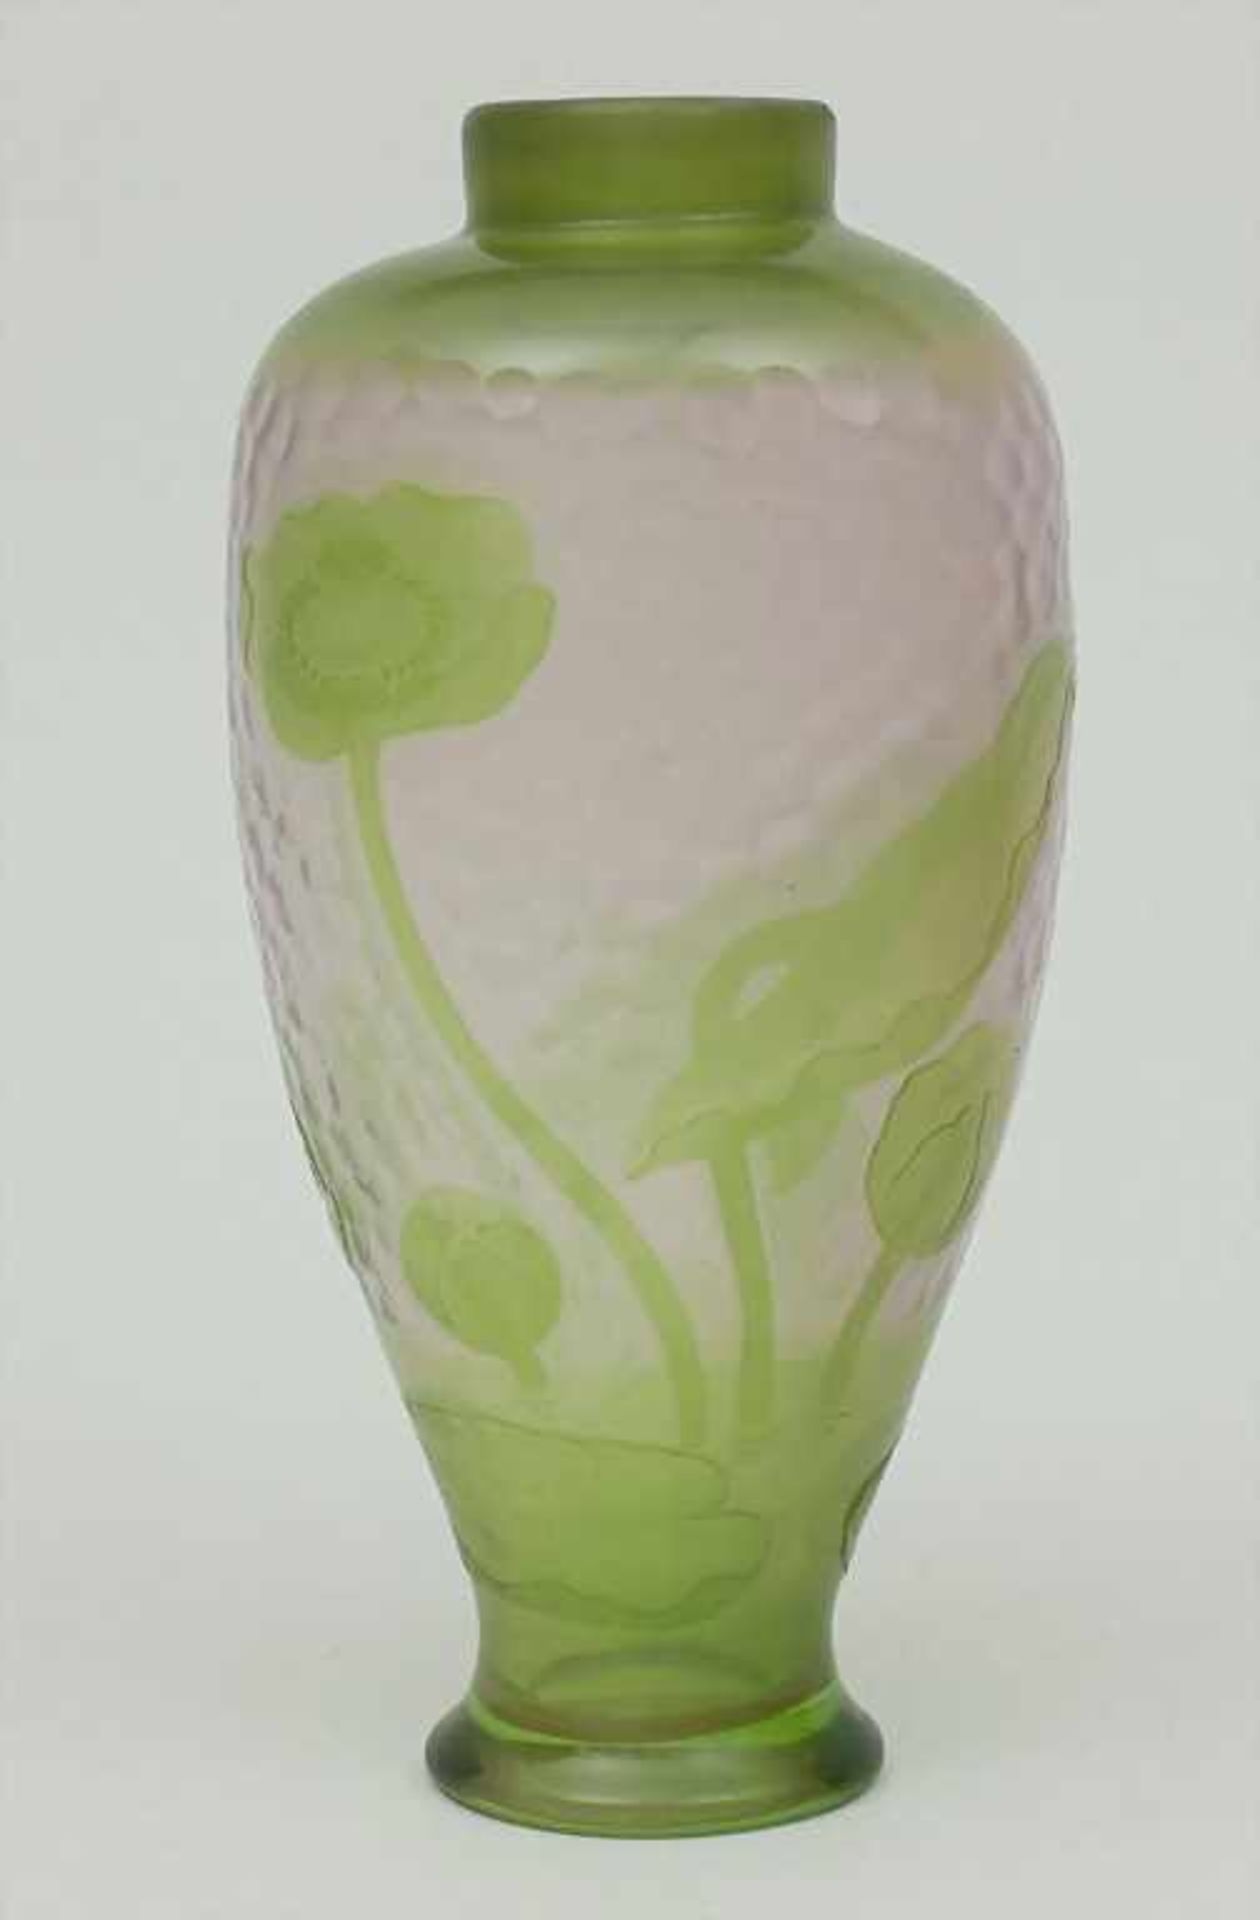 Jugendstil-Vase, Daum Frères, Nancy, um 1900durchsichtiges Glas, zartgrün überfangen, umlaufend - Bild 2 aus 5